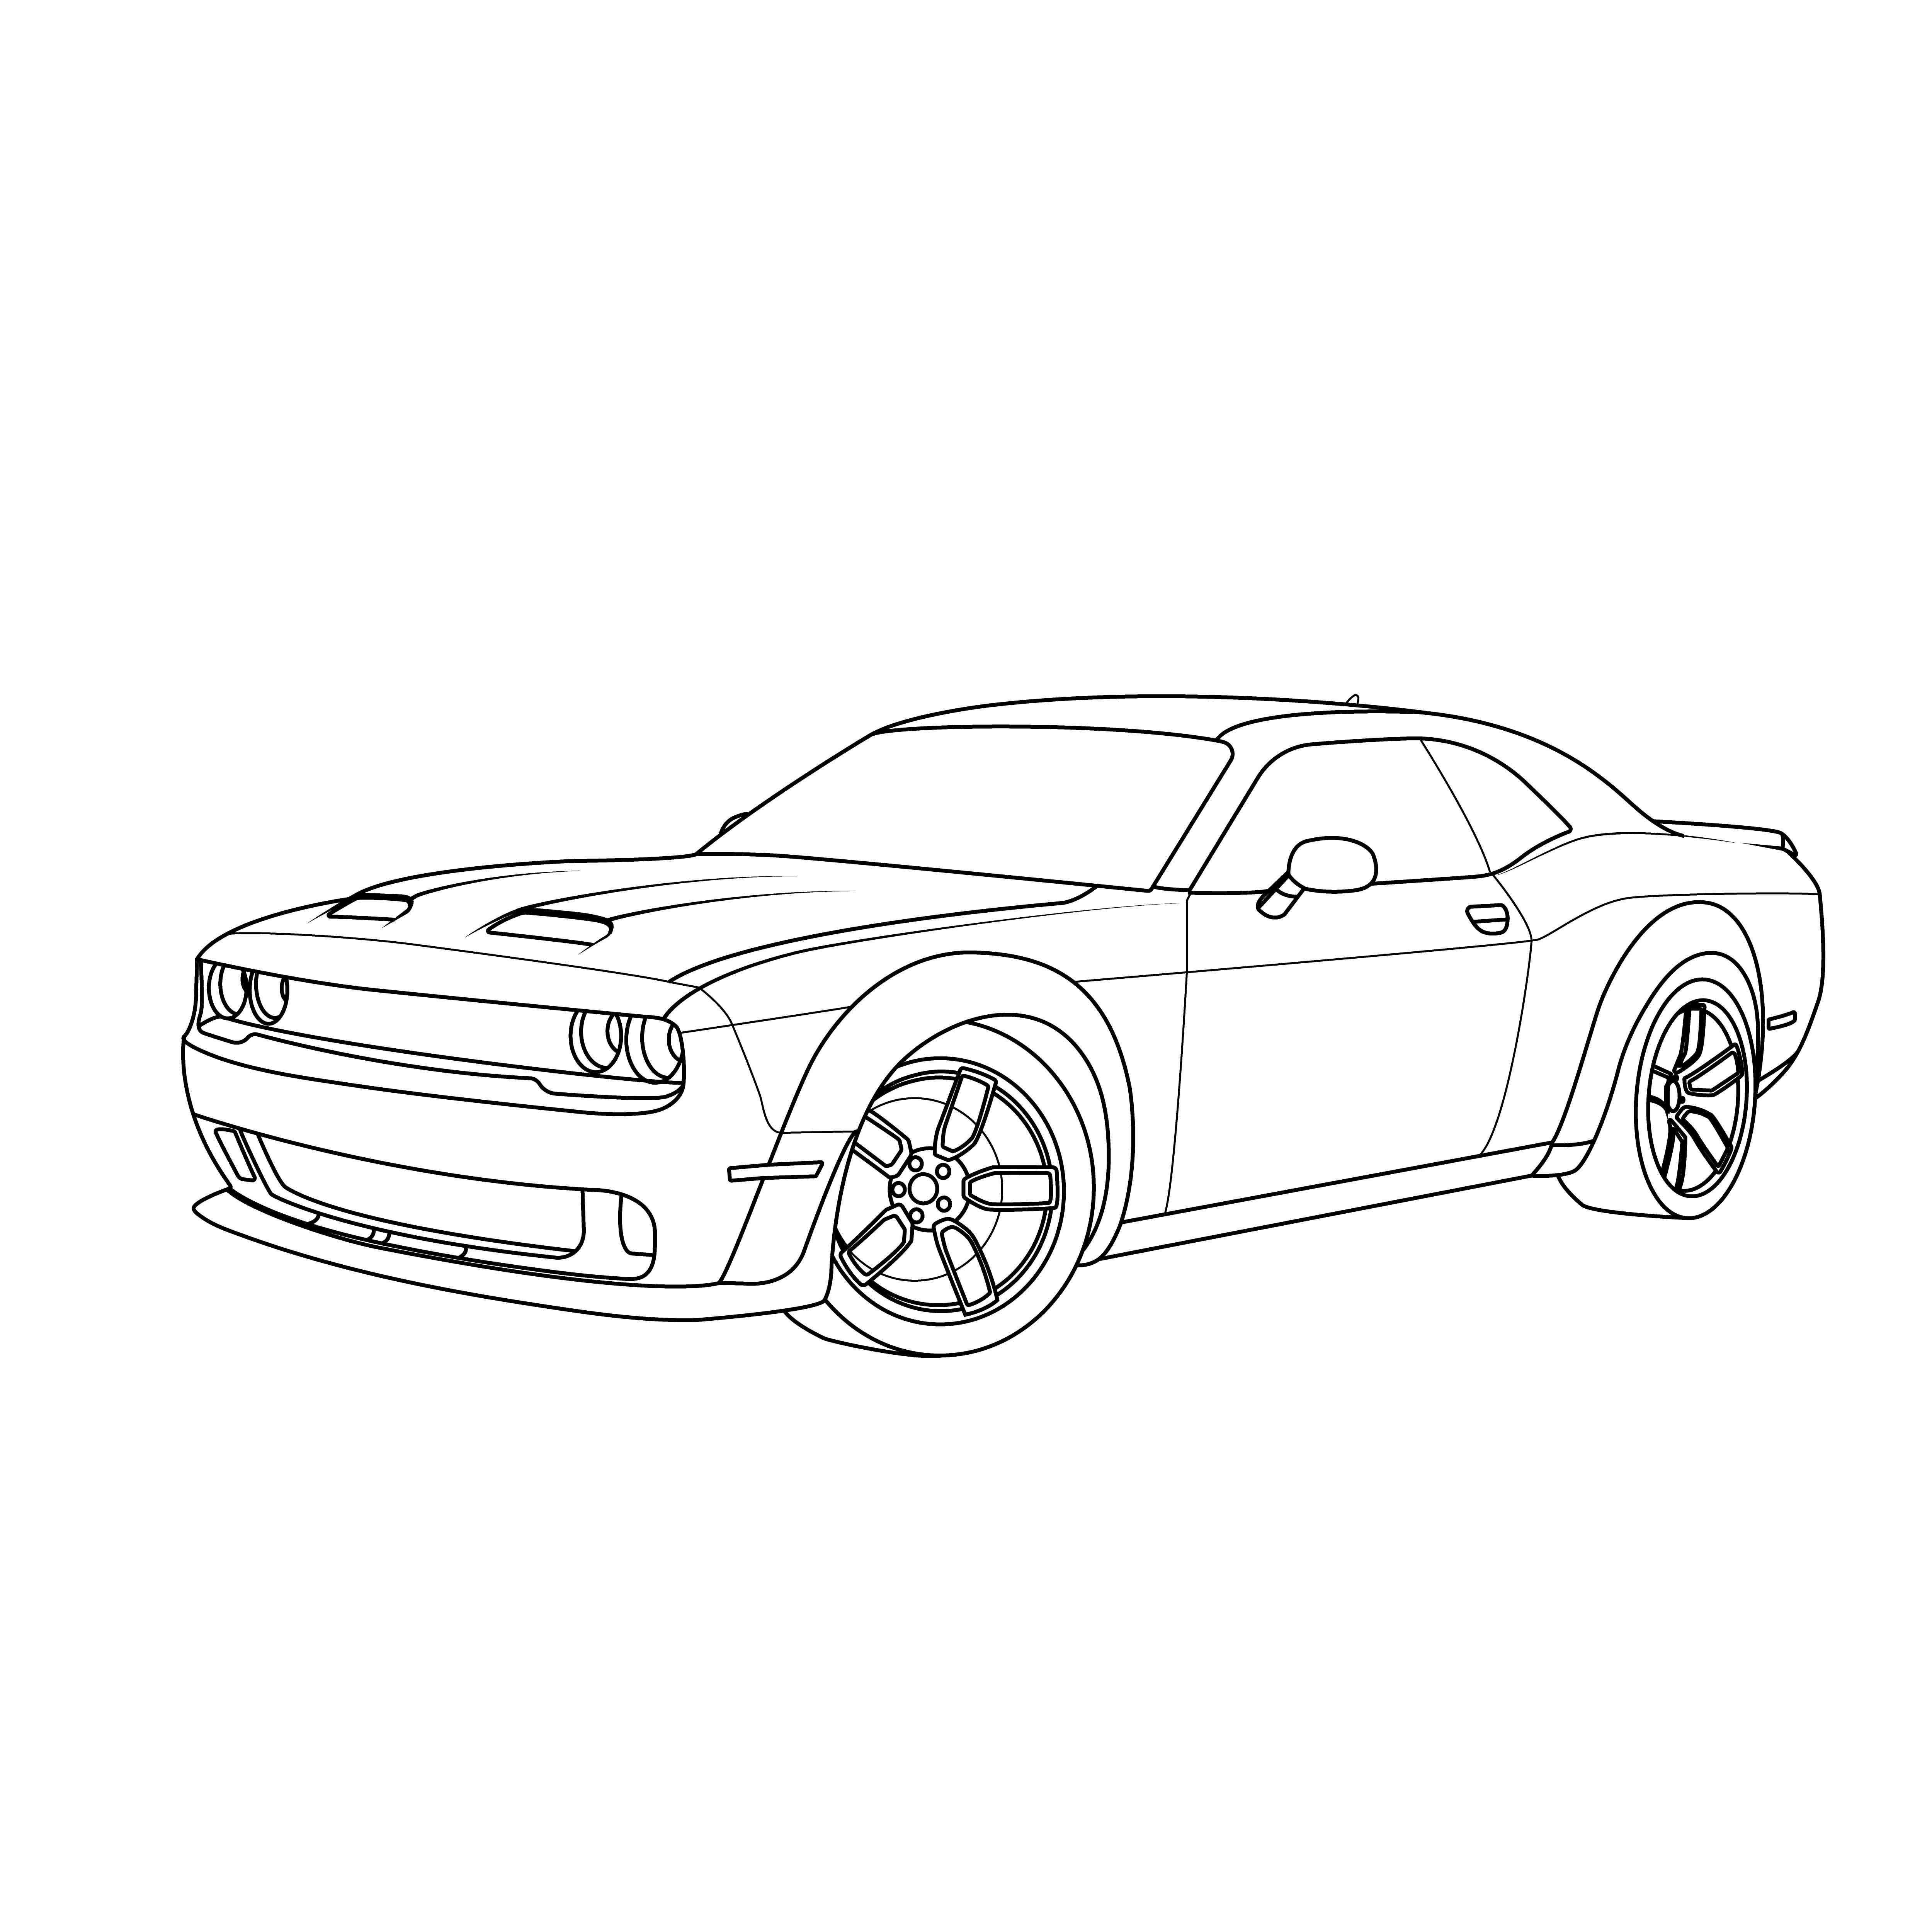 Dodge challenger car vector line drawing illustration